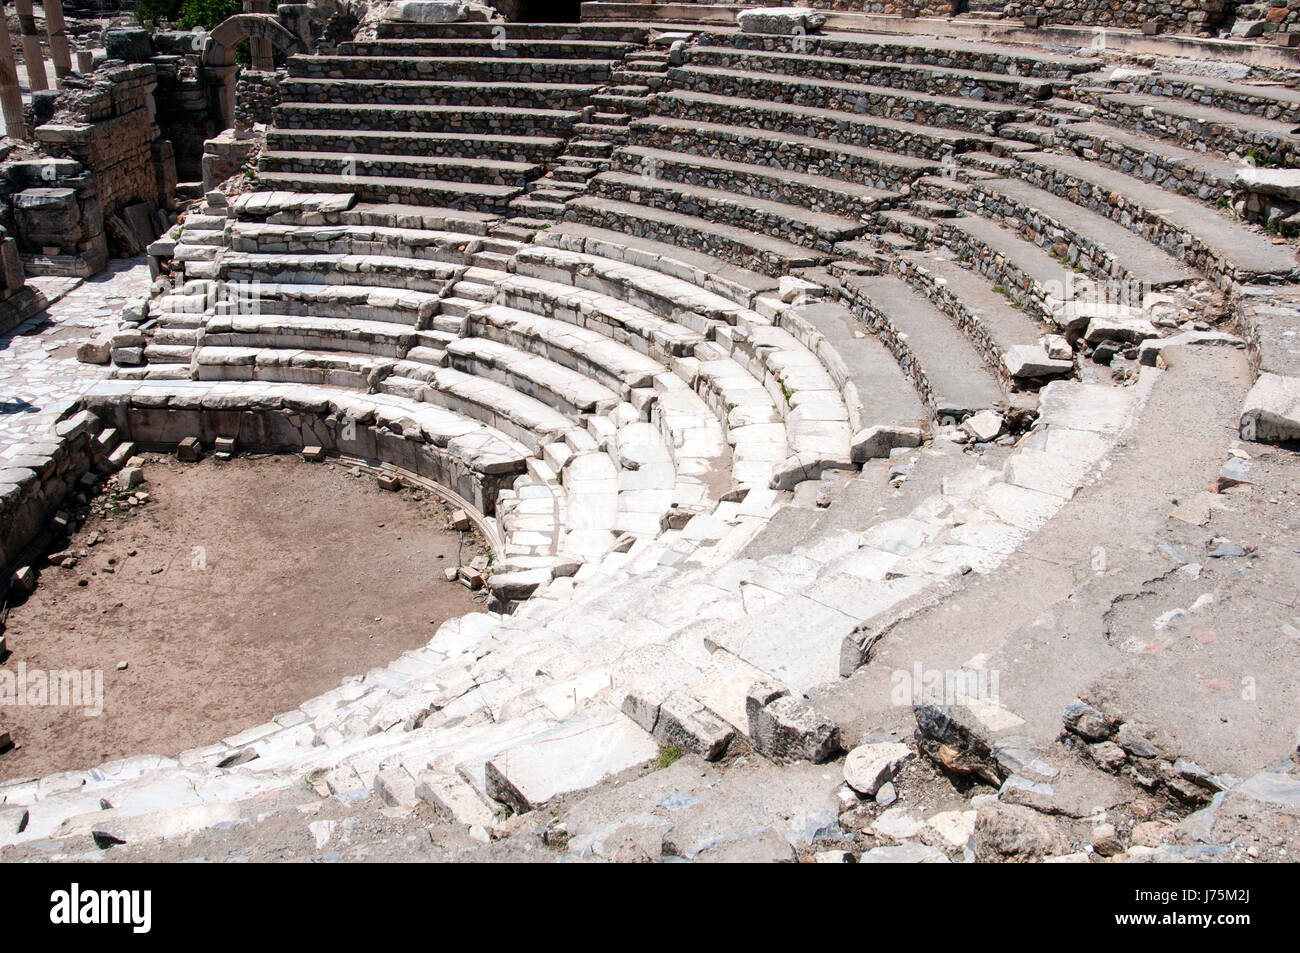 The Odeon amphitheater at Ephesus, Turke Stock Photo